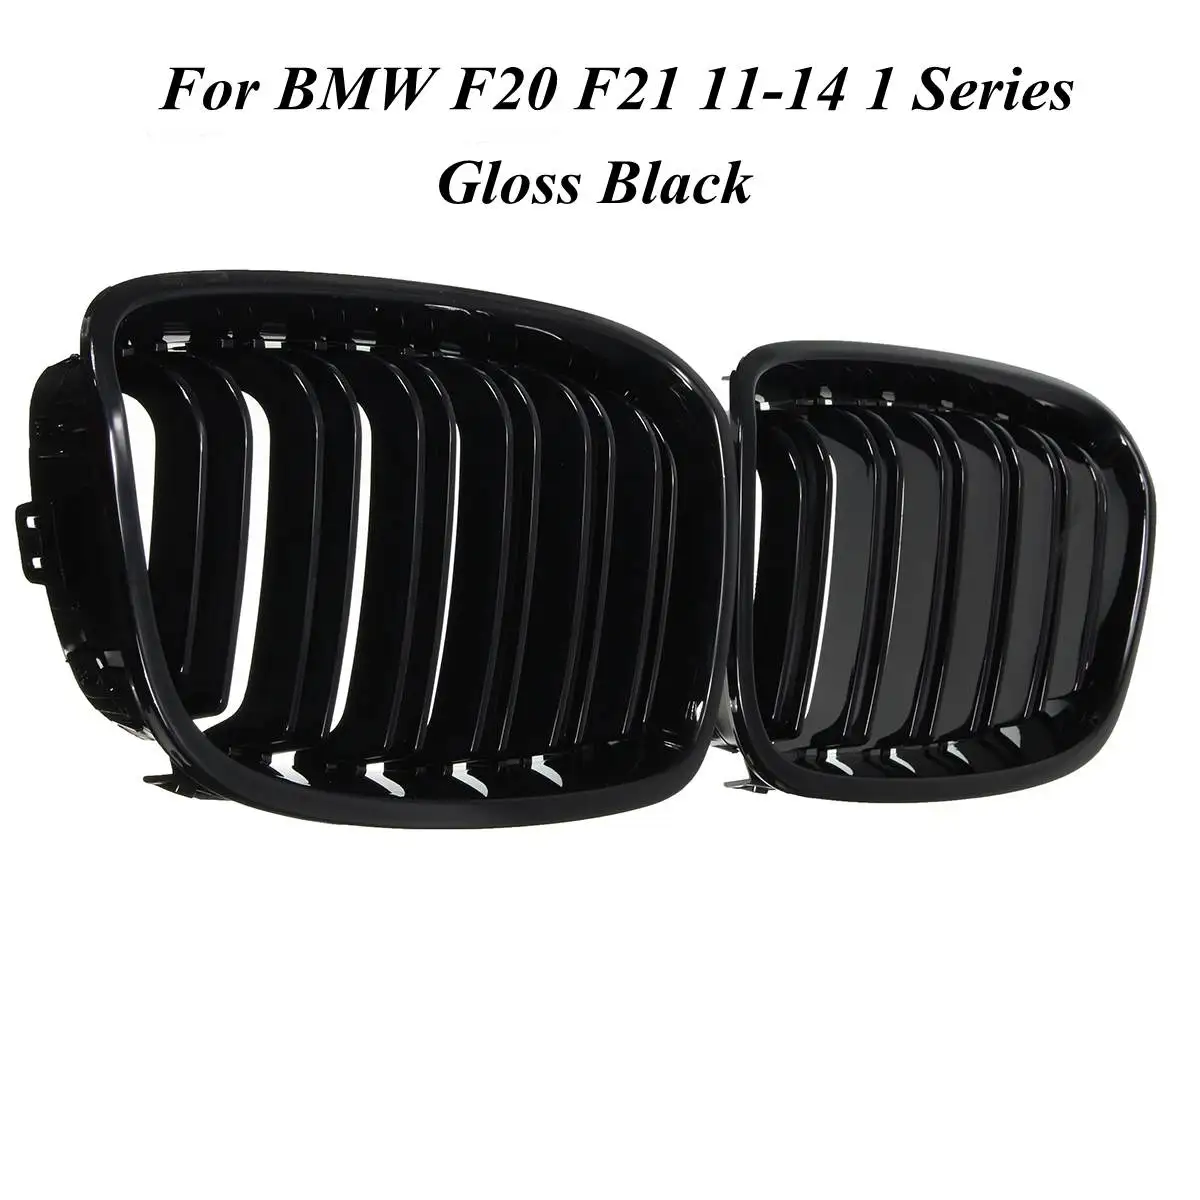 Для BMW F20 F21 2011 2013 1 серия, глянцевая матовая Черная Широкая Передняя решетка для почек, автостайлинг, гоночные решетки - Цвет: Gloss Black